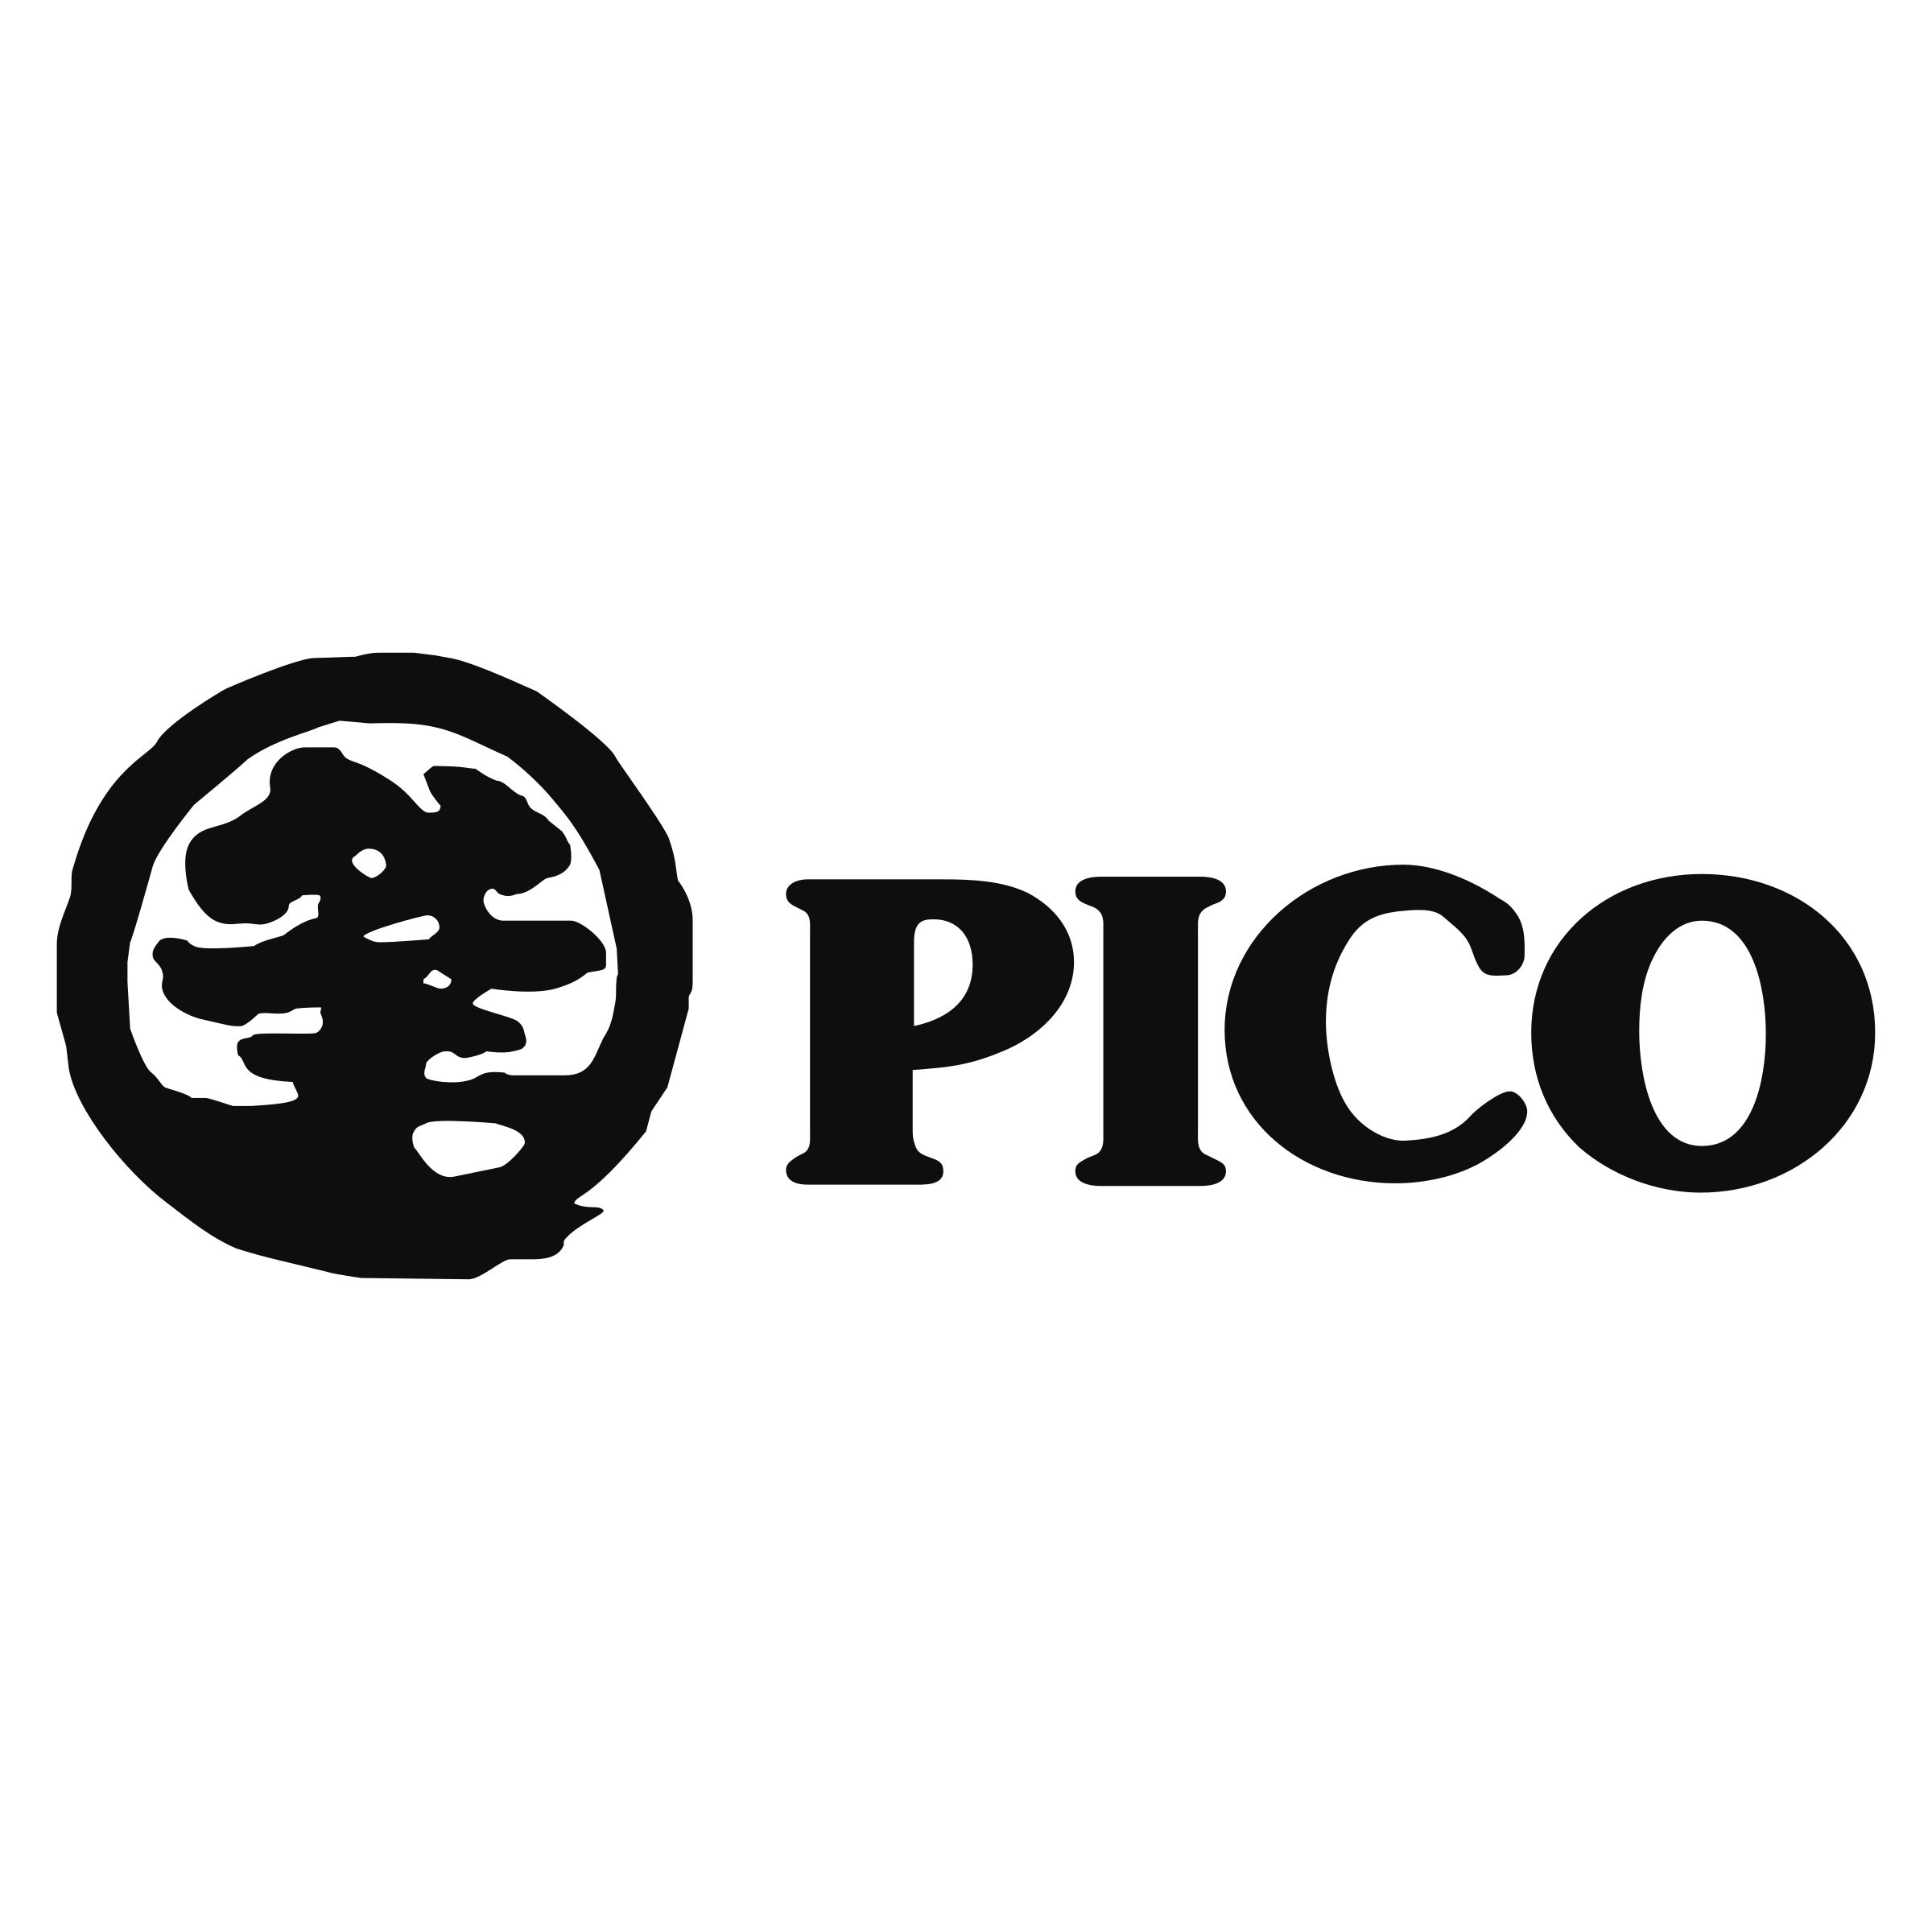 Pico Logo - Pico Logo PNG Transparent & SVG Vector